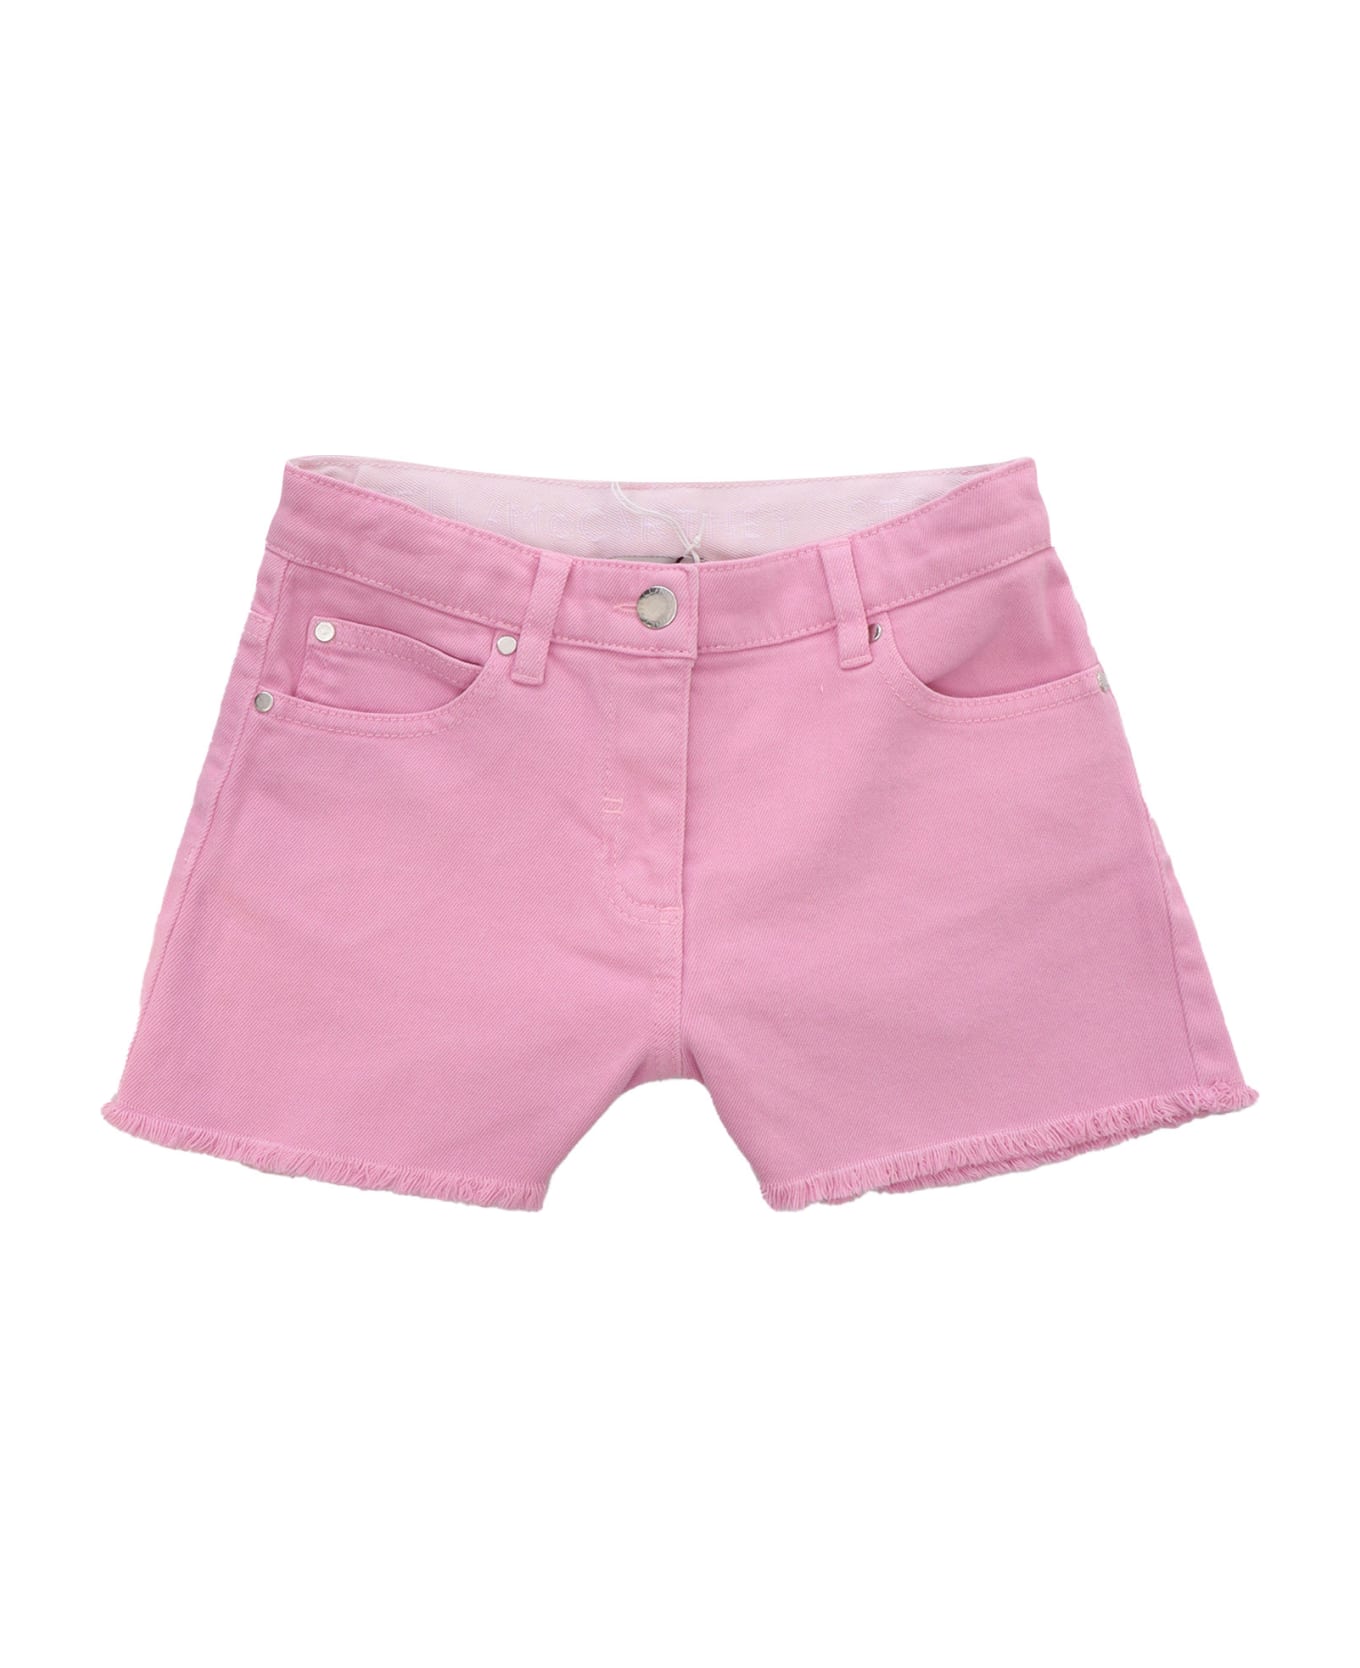 Stella McCartney Kids Pink Denim Shorts - PINK